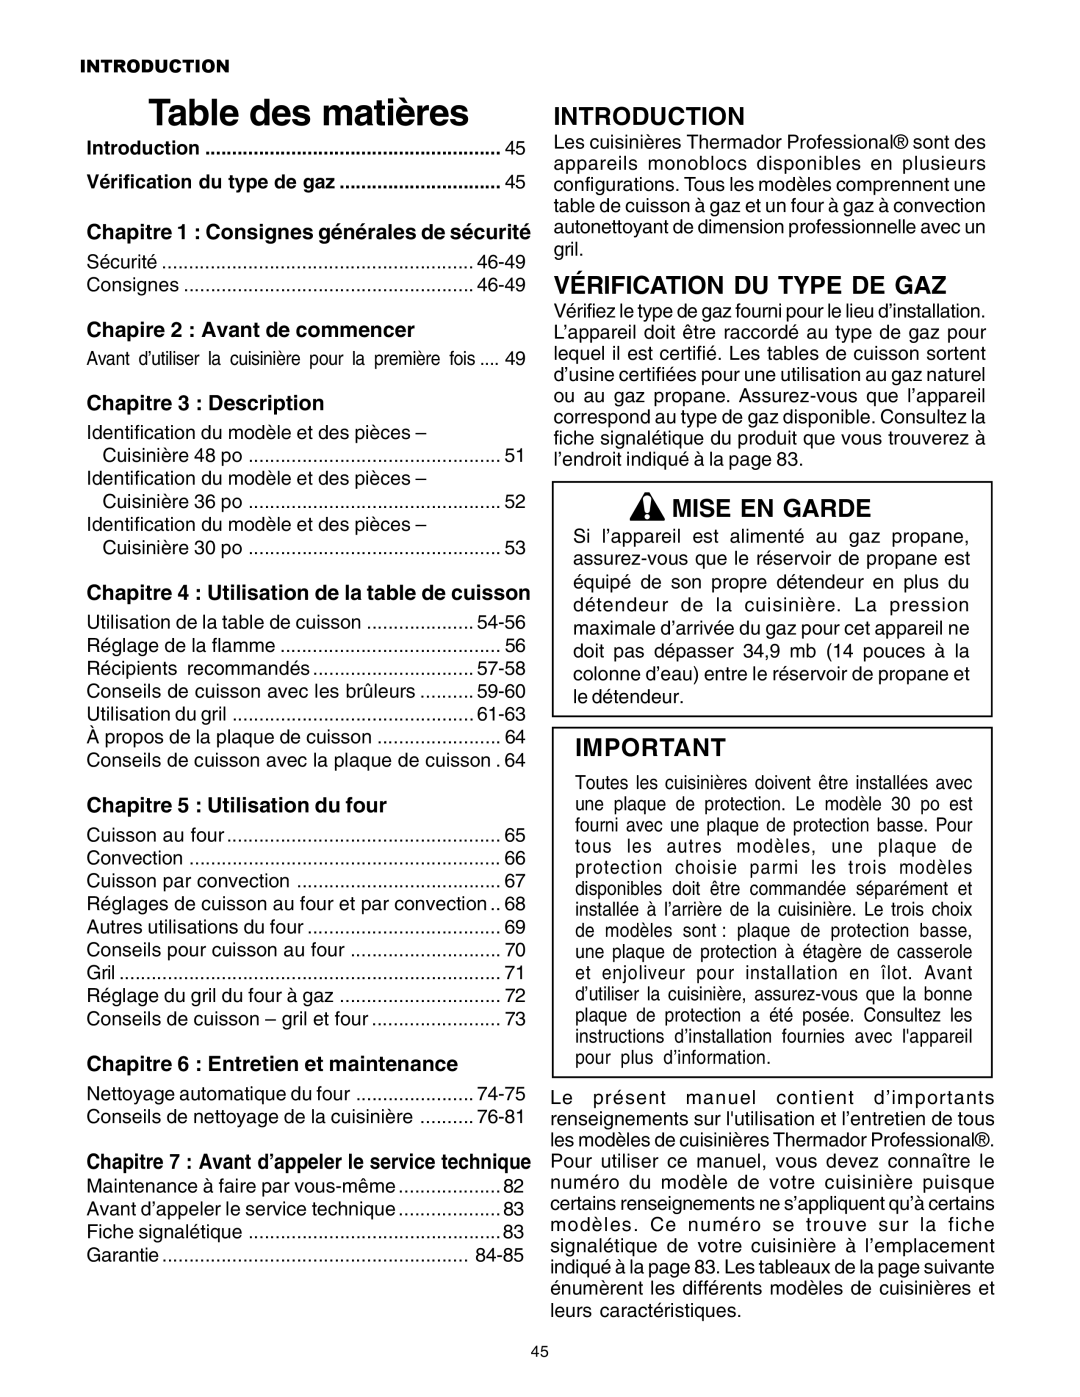 Thermador PG30 Table des matières, Vérification Du Type De Gaz, Mise En Garde, Chapire 2 : Avant de commencer 